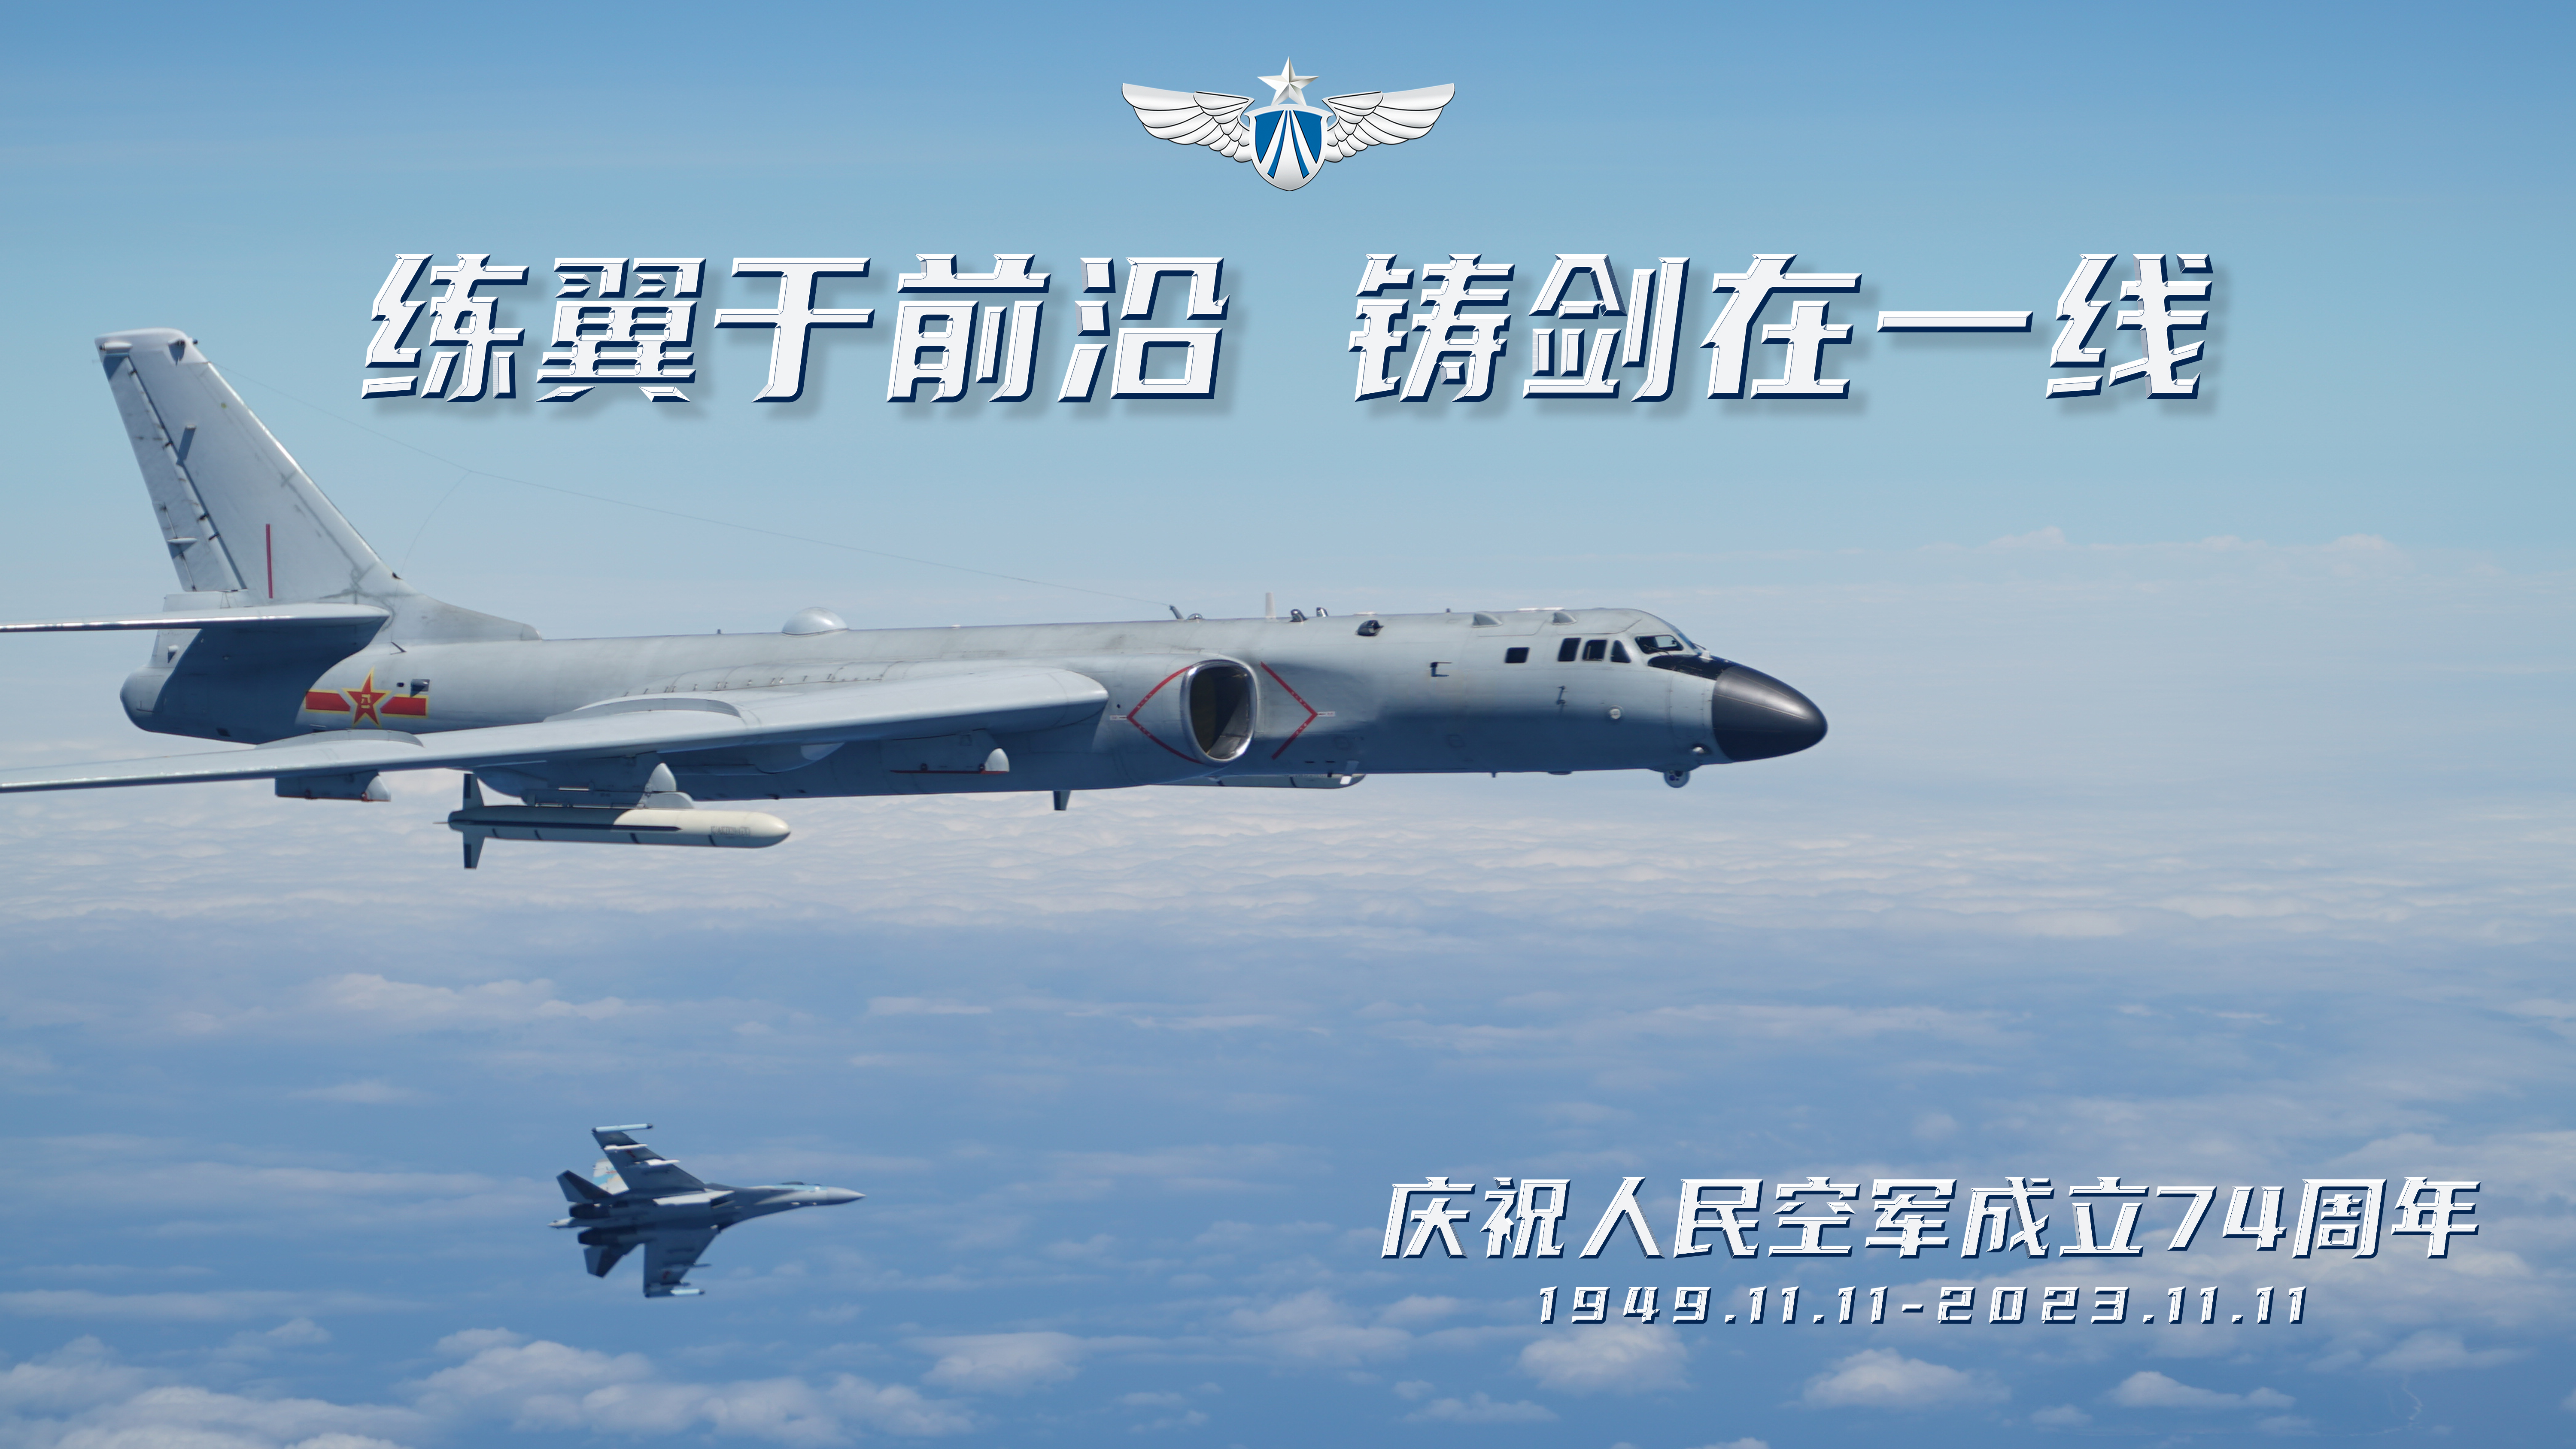 庆祝人民空军成立74周年主题海报 (6).jpg